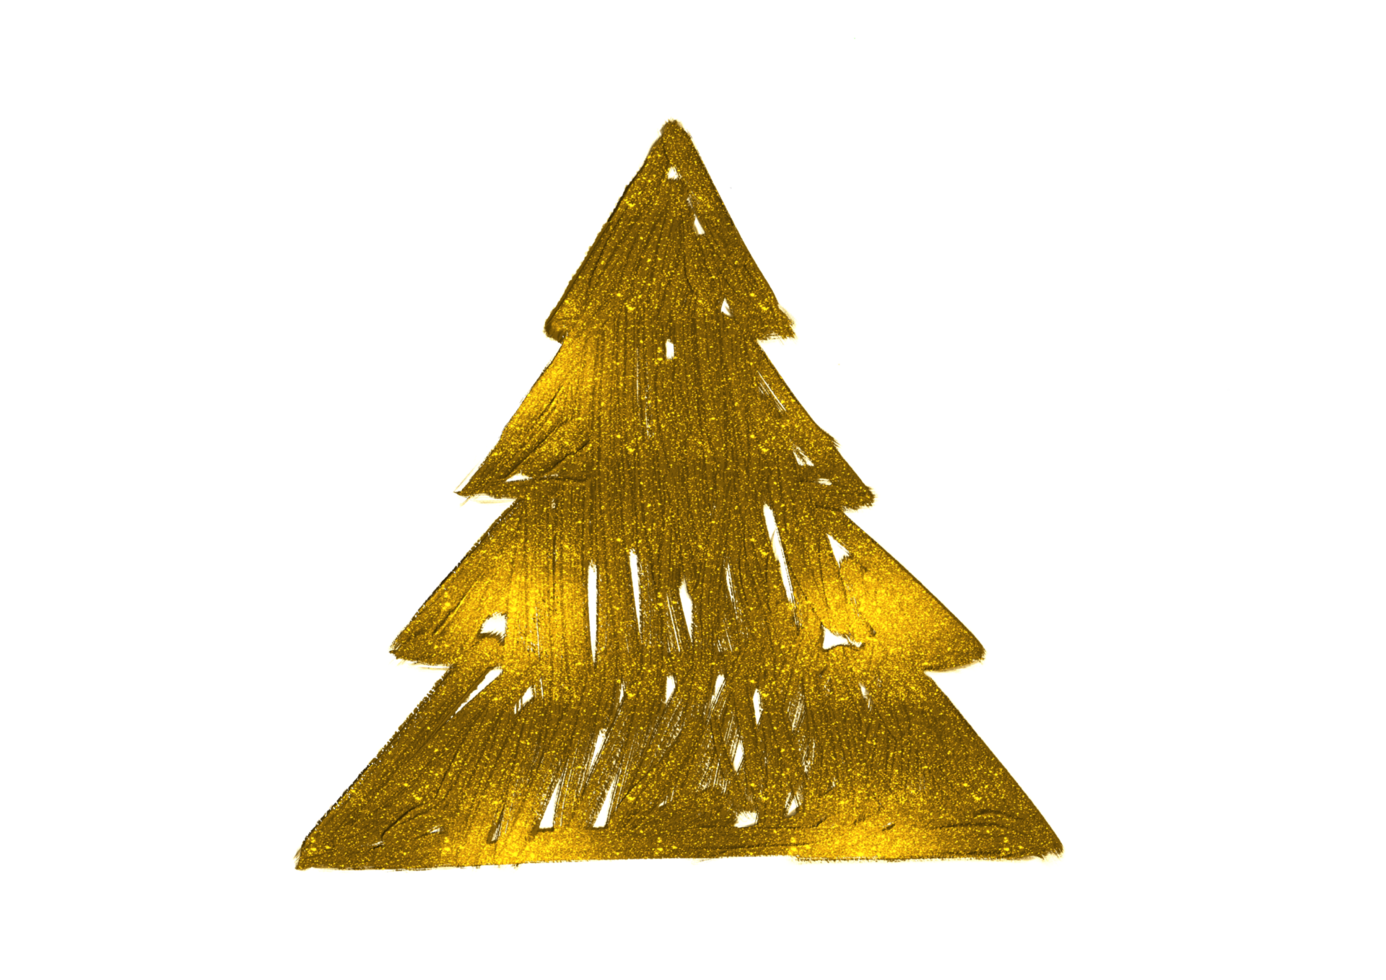 hand gezeichneter goldener glitzerölpinselstrich weihnachtsbaum mit stern isoliert auf png oder transparentem hintergrund. grafische ressourcen für neujahr, geburtstage und luxuskarten.